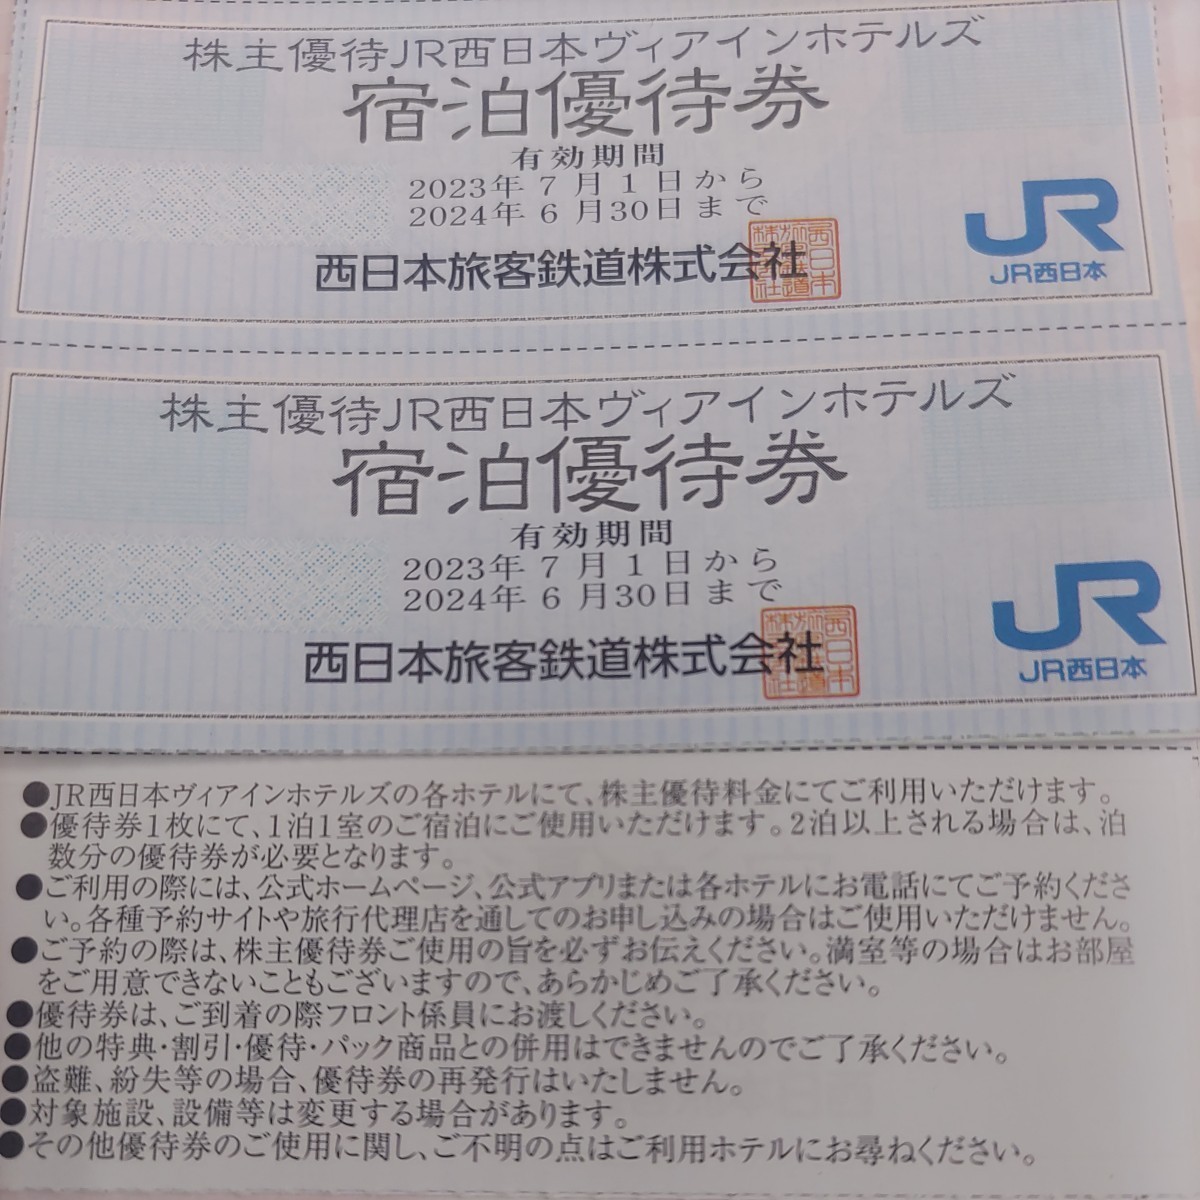 1枚です！JR西日本優待券のヴィアインホテル割引券1枚1円（送料込み64円）その他枚数も出品しております。（希望者には3枚まで増量）の画像1